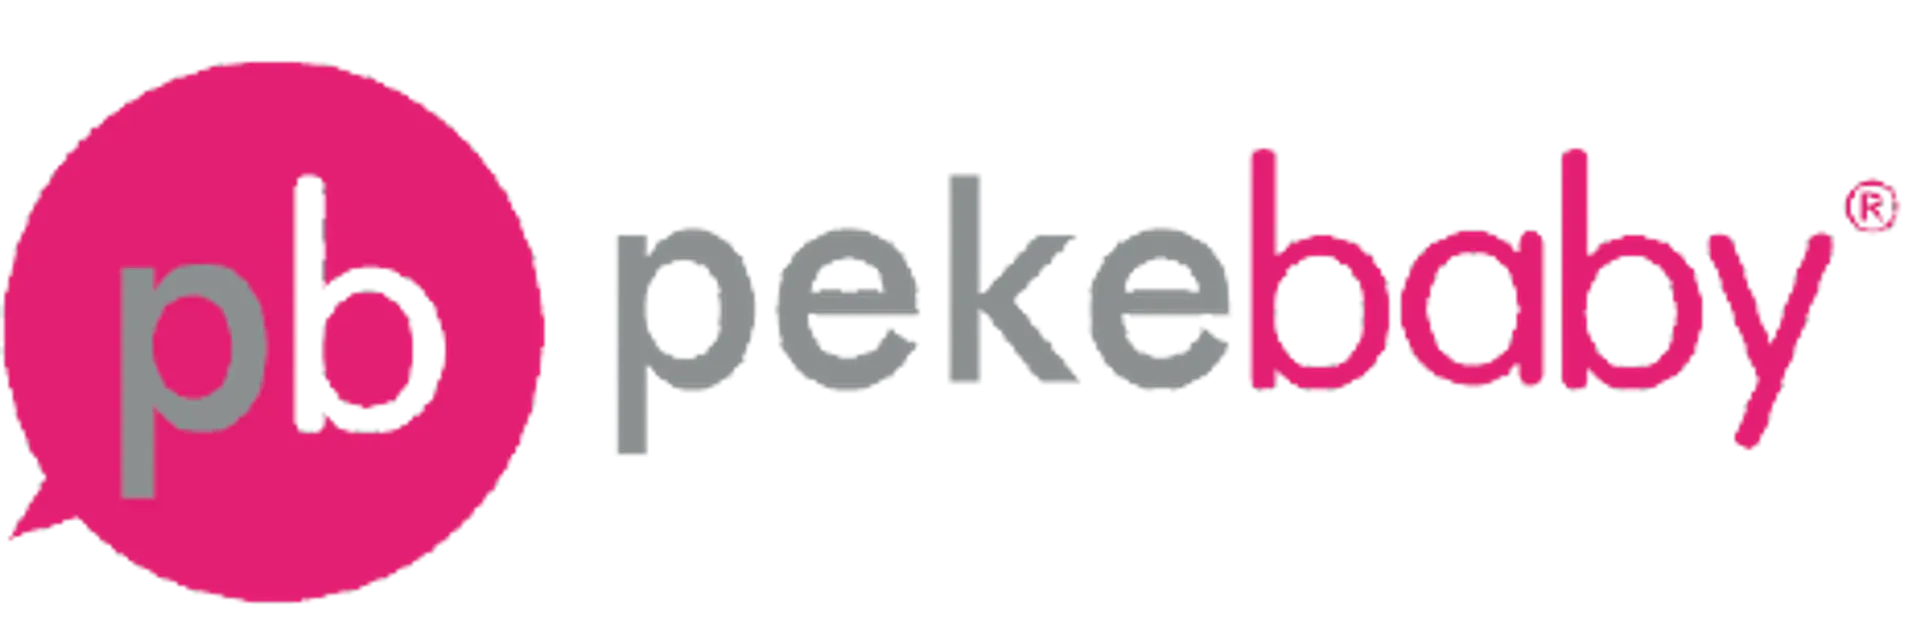 PEKEBABY logo